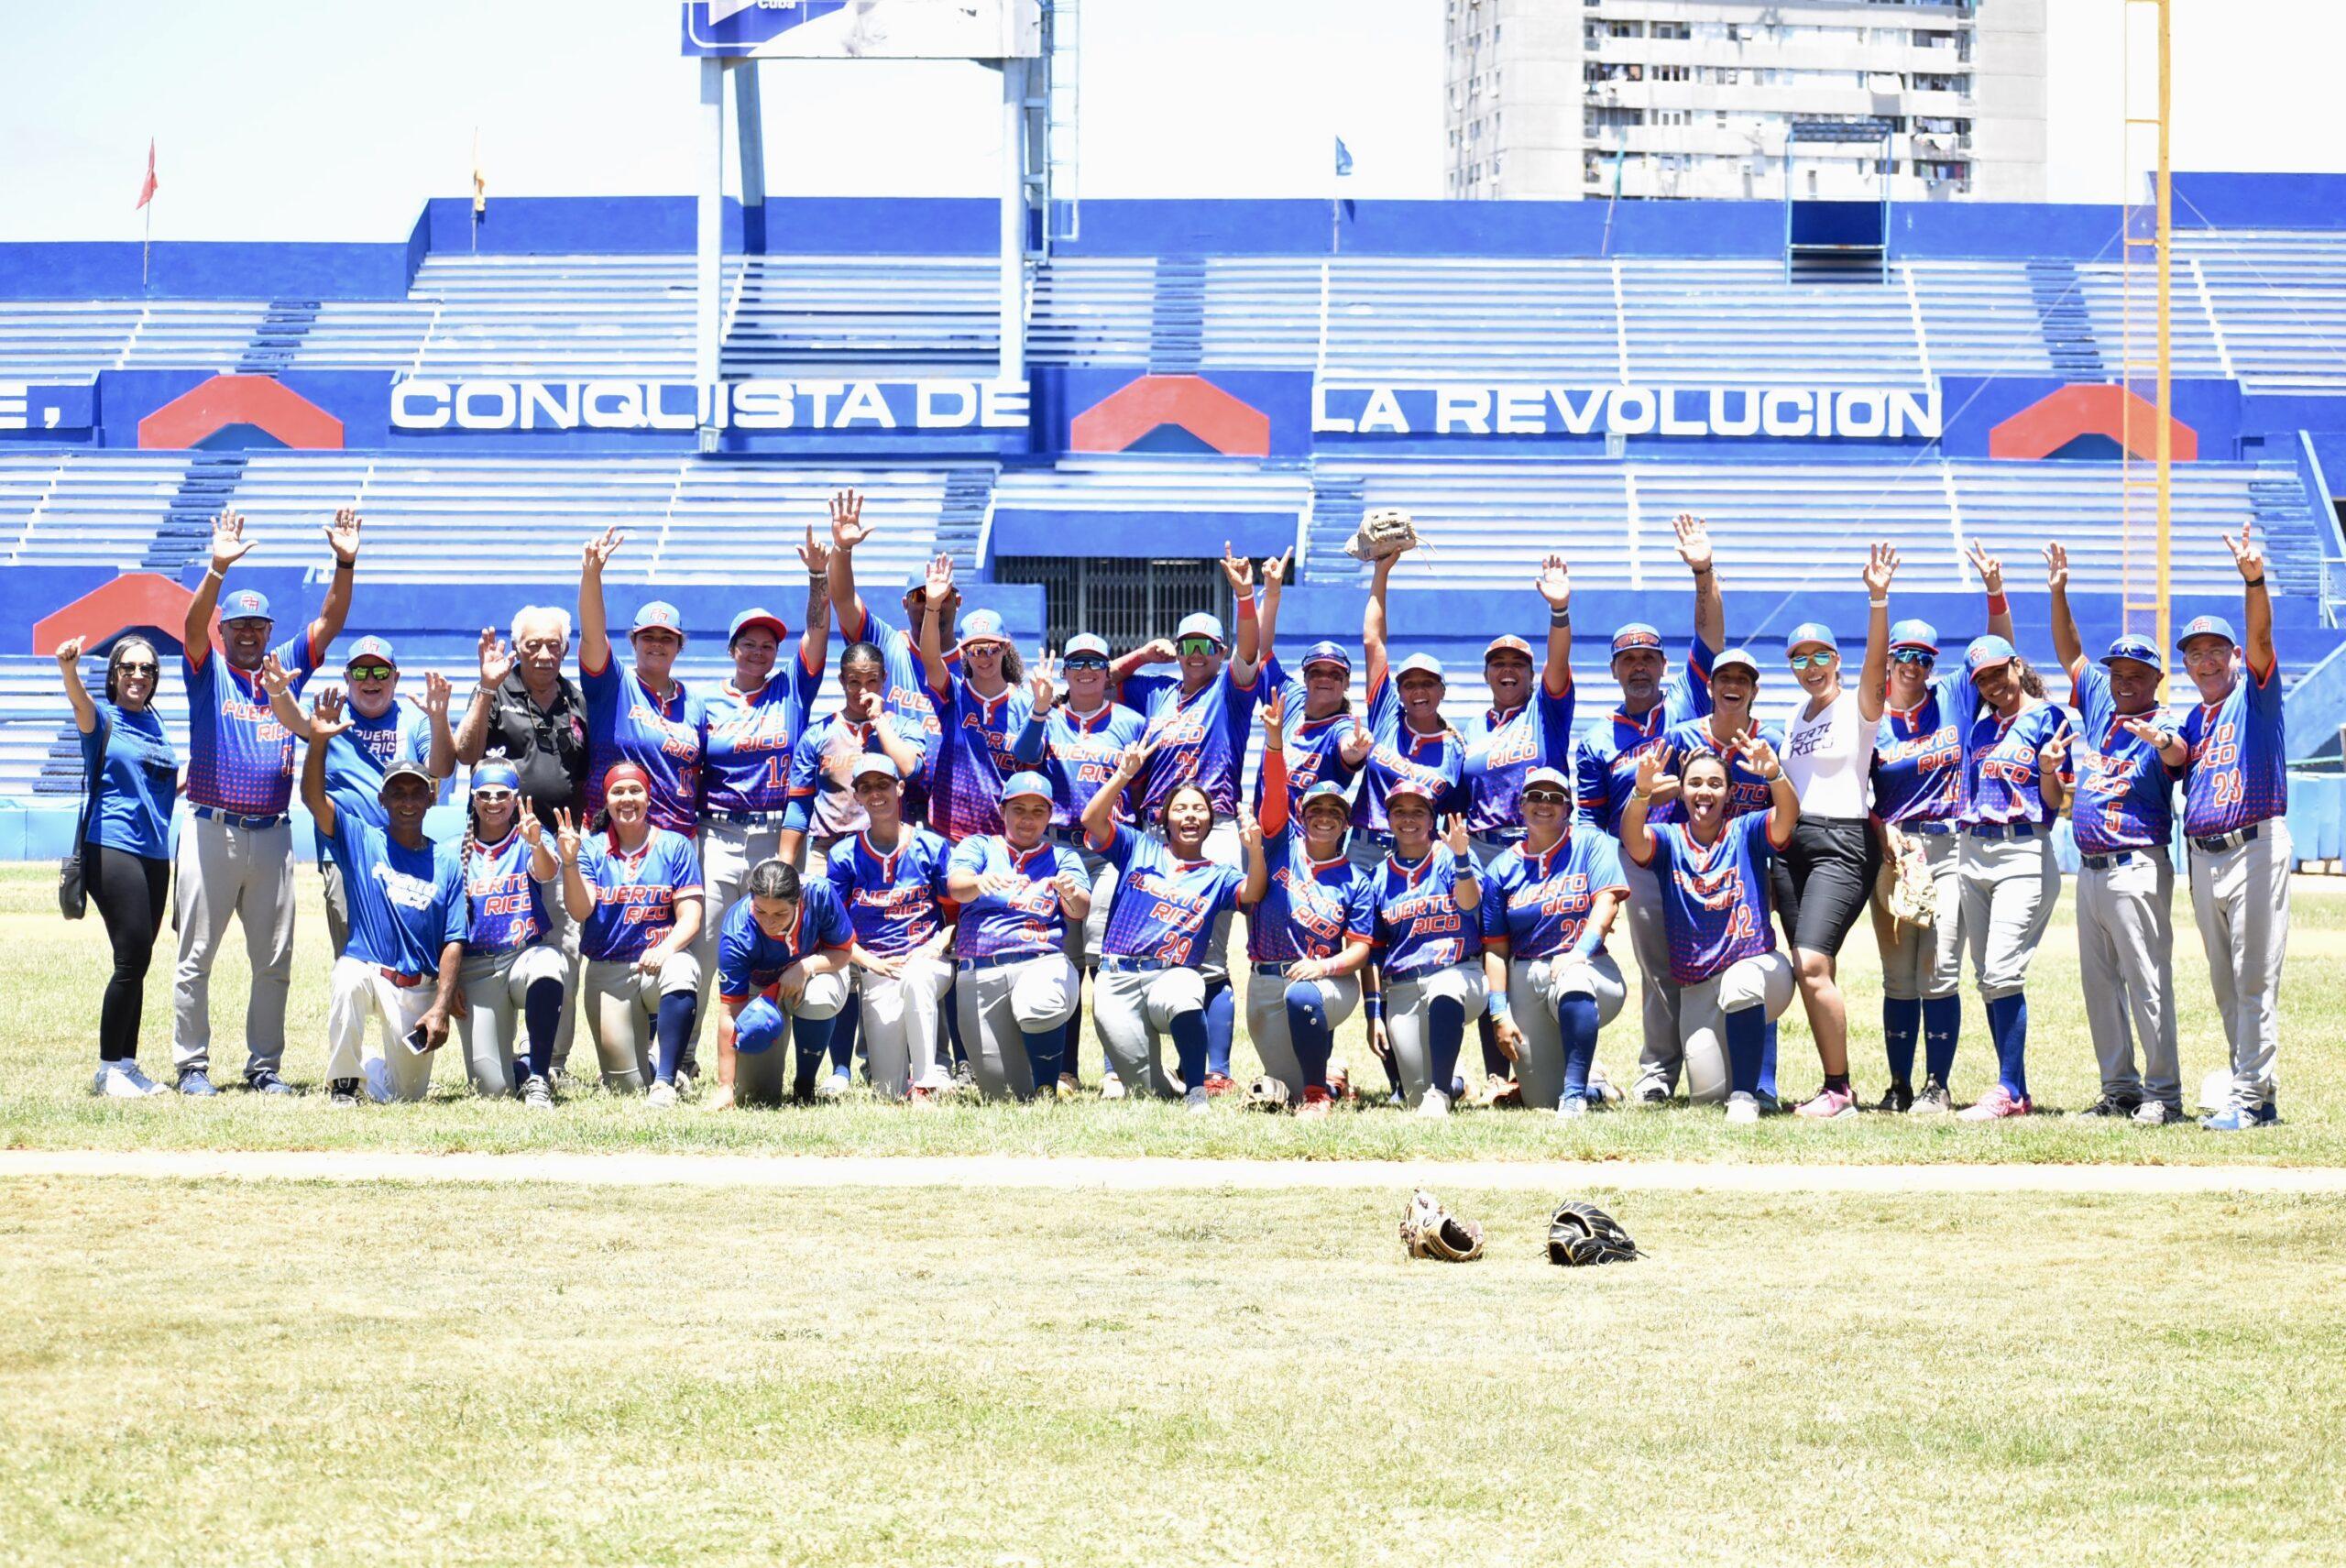 Concluyen invictas Equipo Nacional de Béisbol en serie amistosa con Cuba